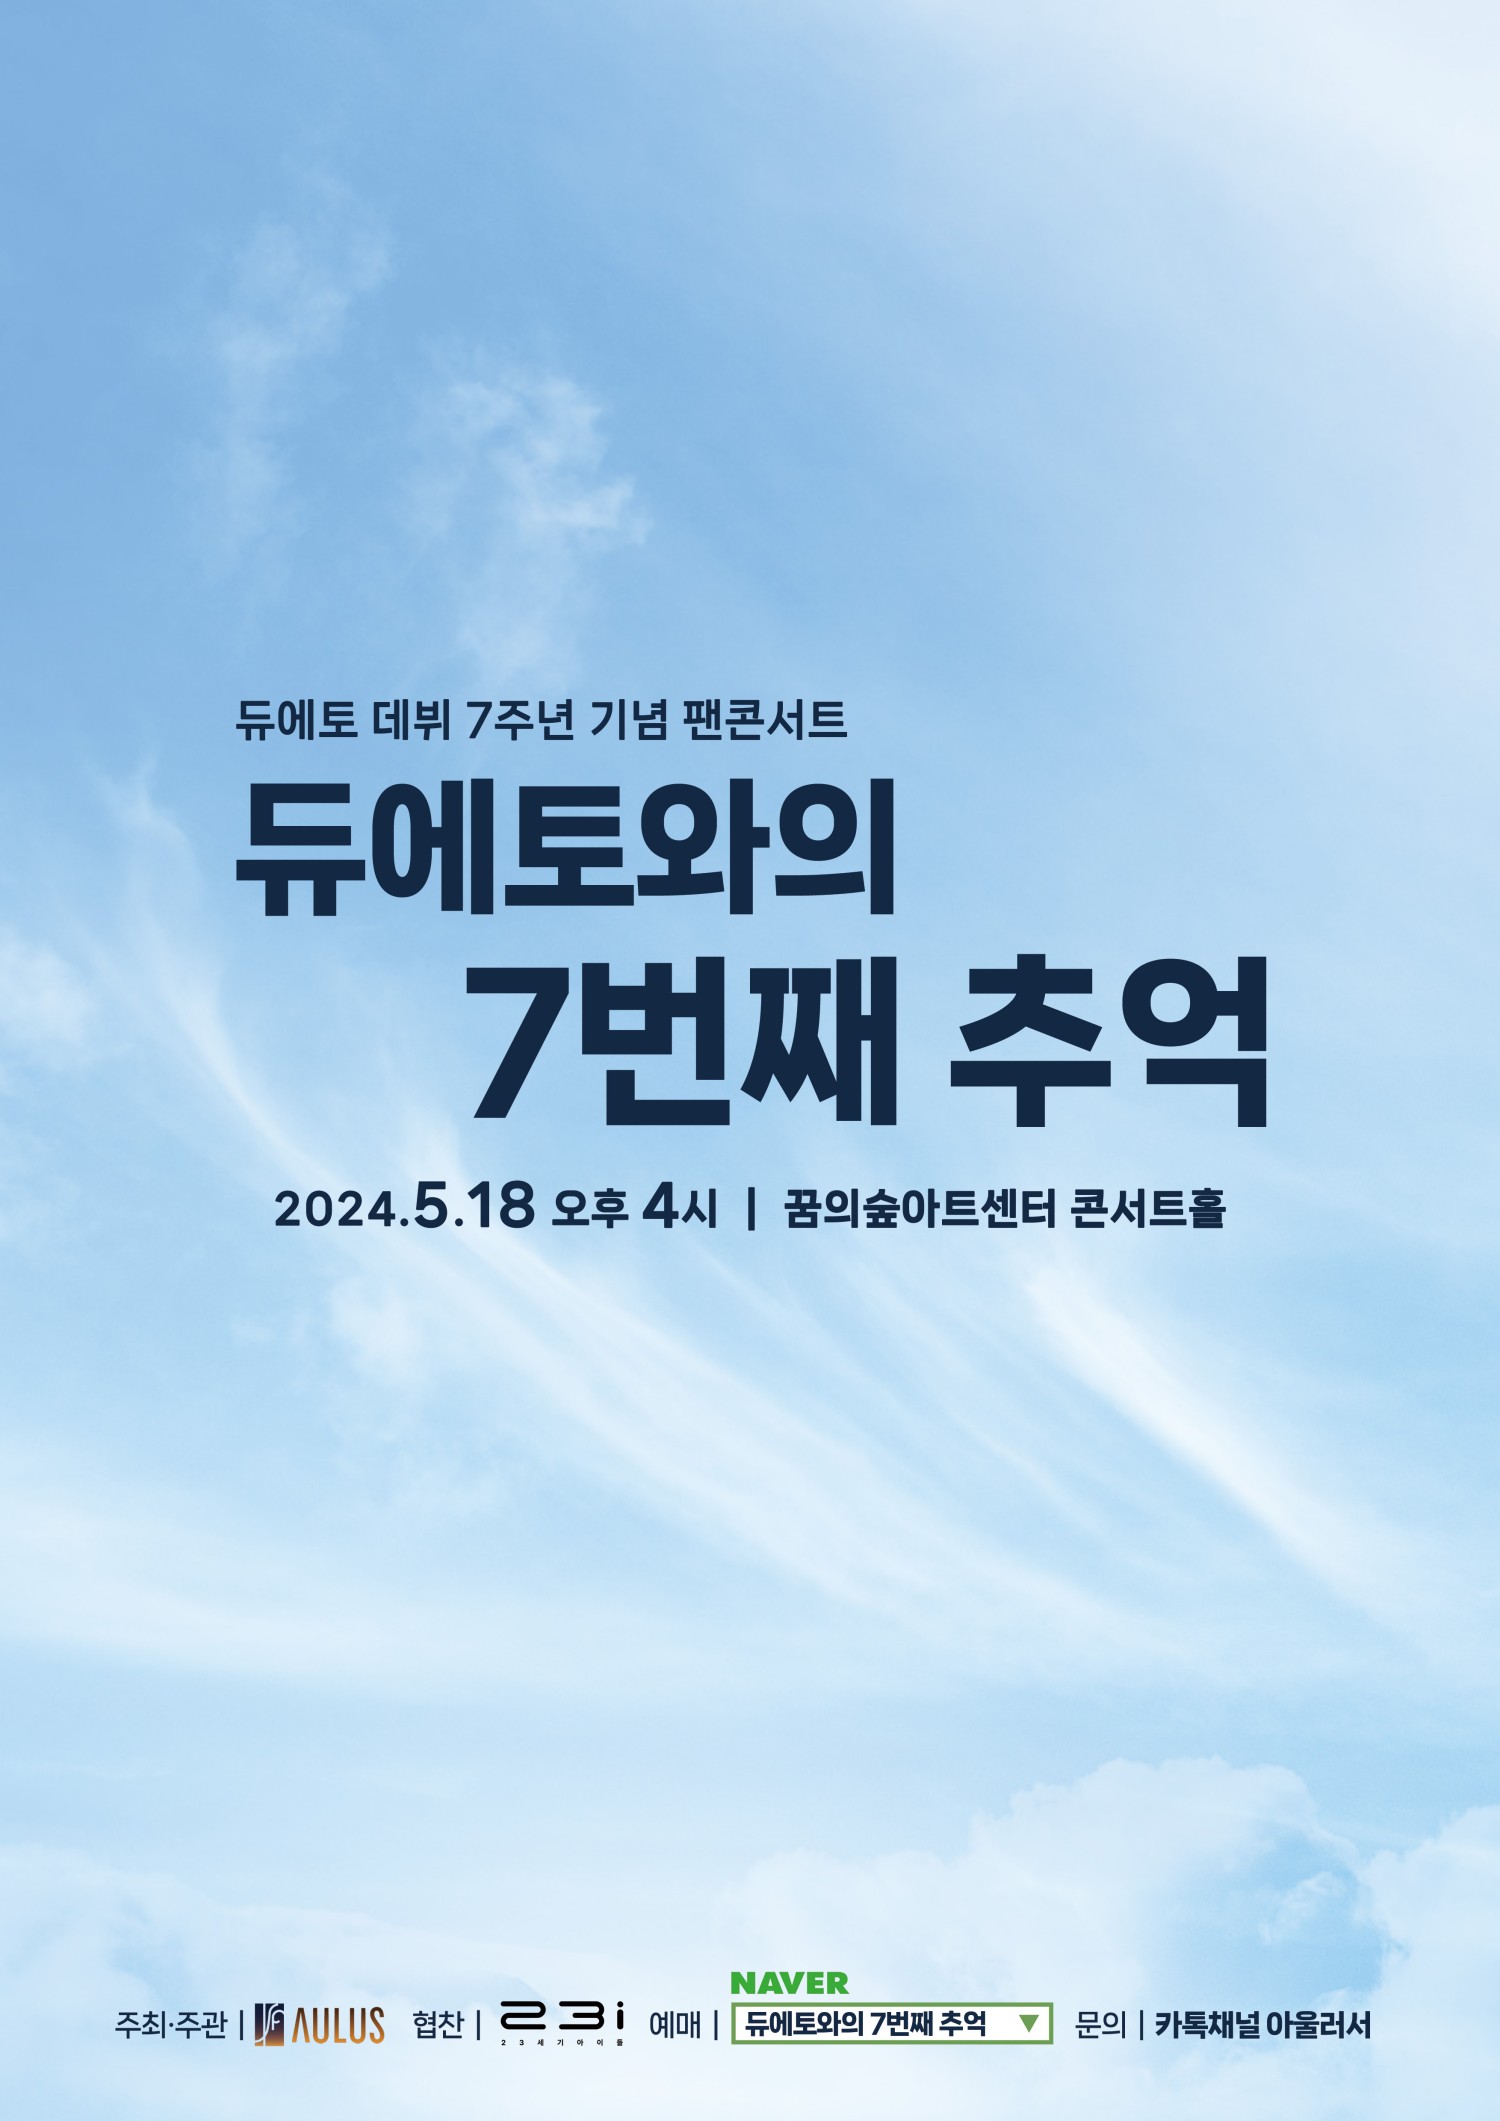 듀에토 데뷔 7주년 기념 팬콘서트, 듀에토와의 7번째 추억